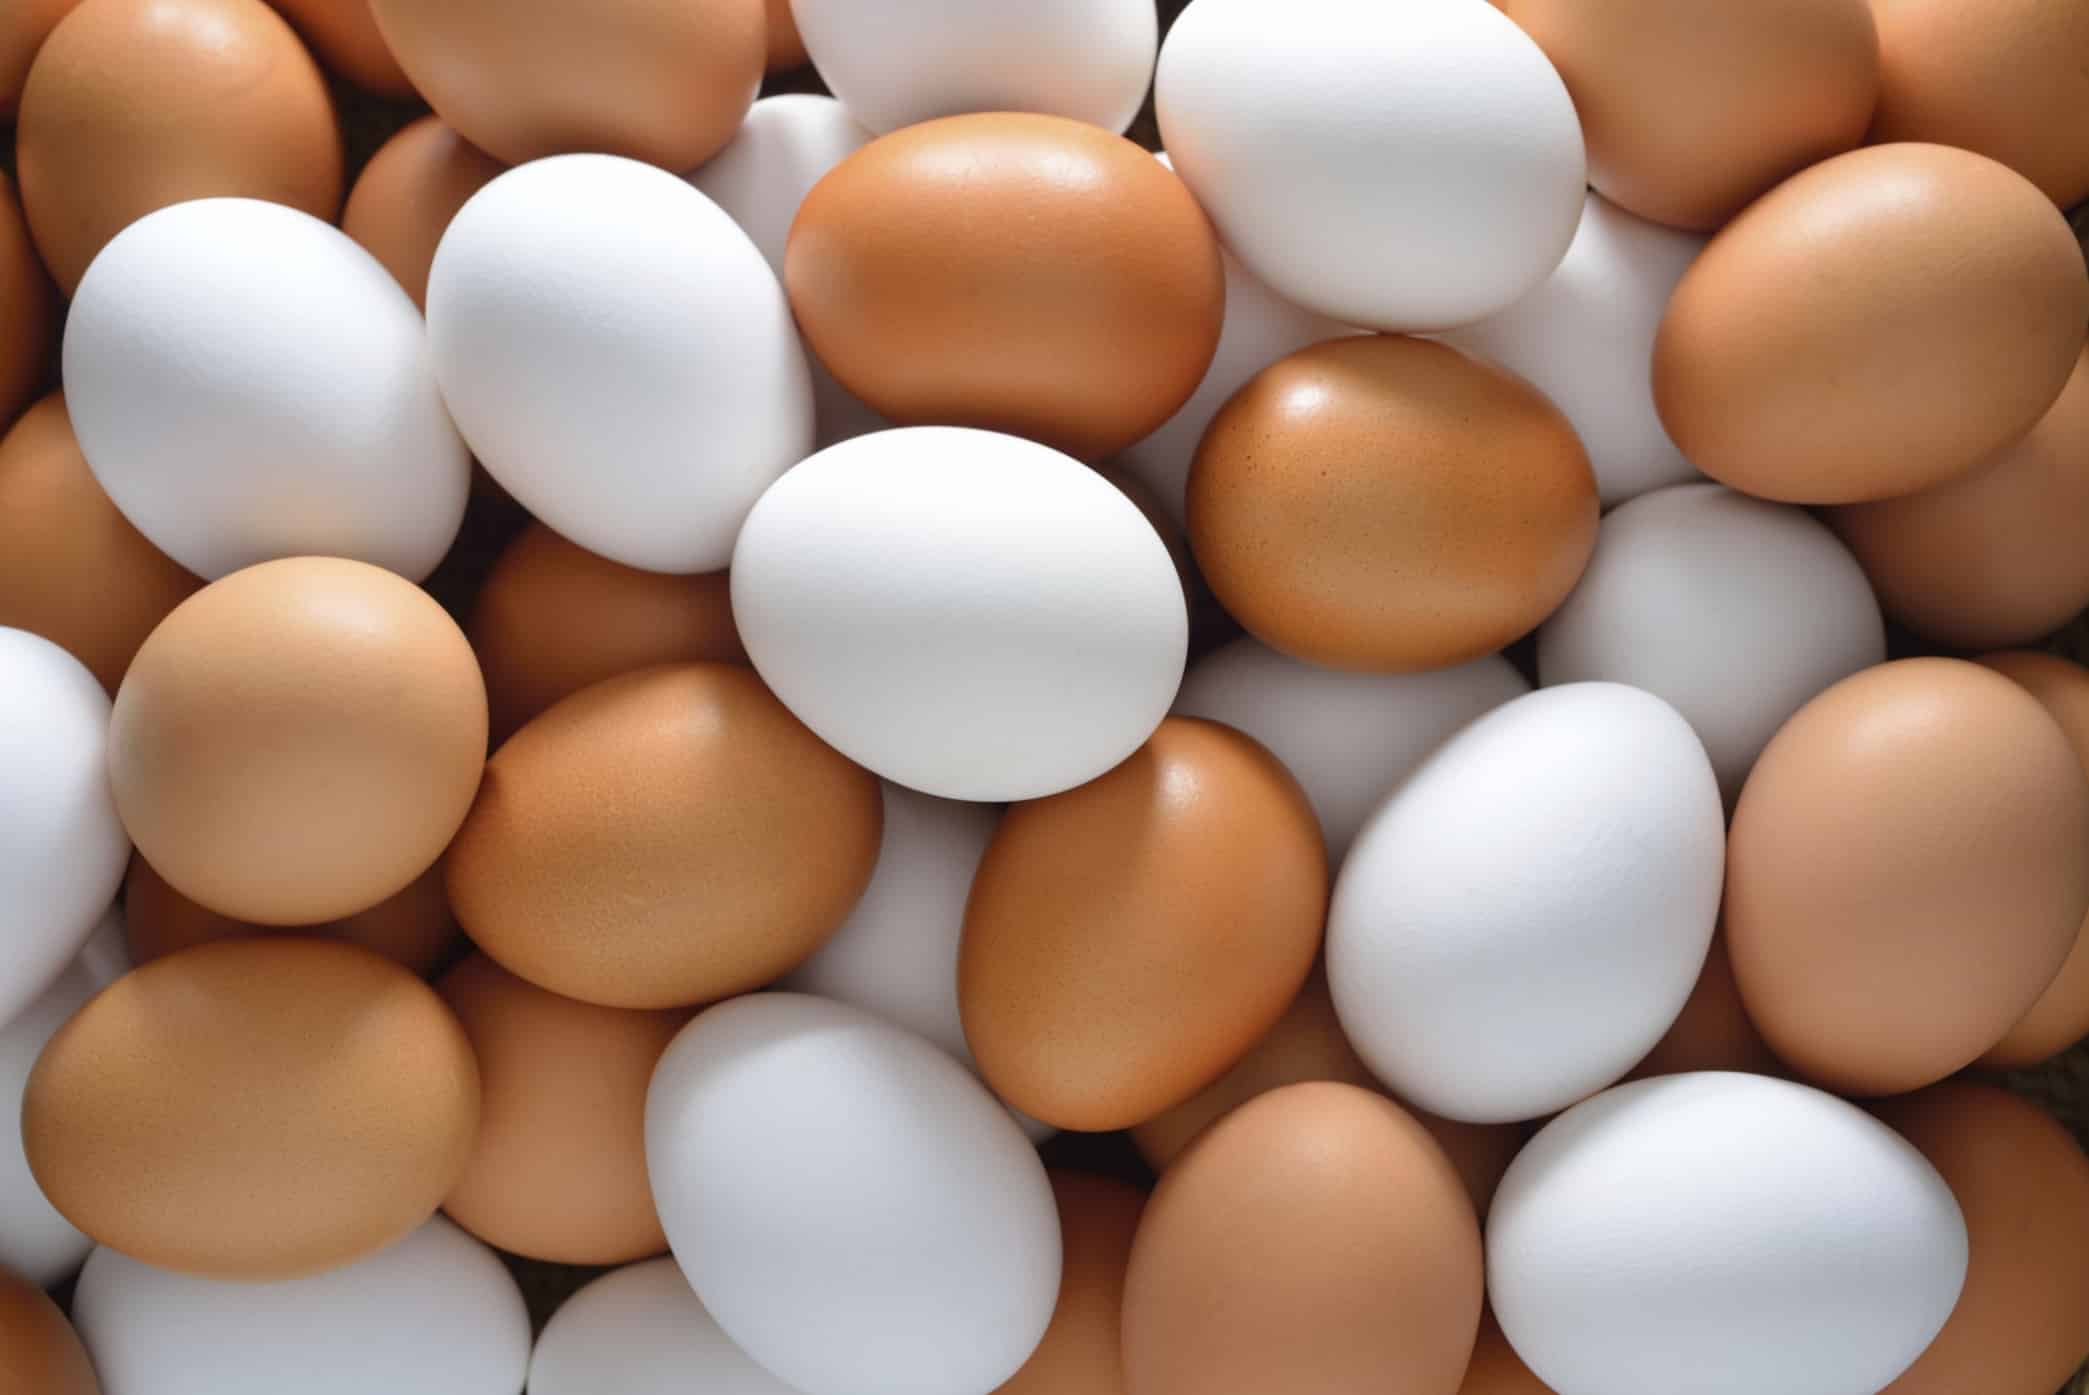 لجنة منتجي الدواجن: لا صحة لبيع البيض بأسعار أقل في دول مجاورة